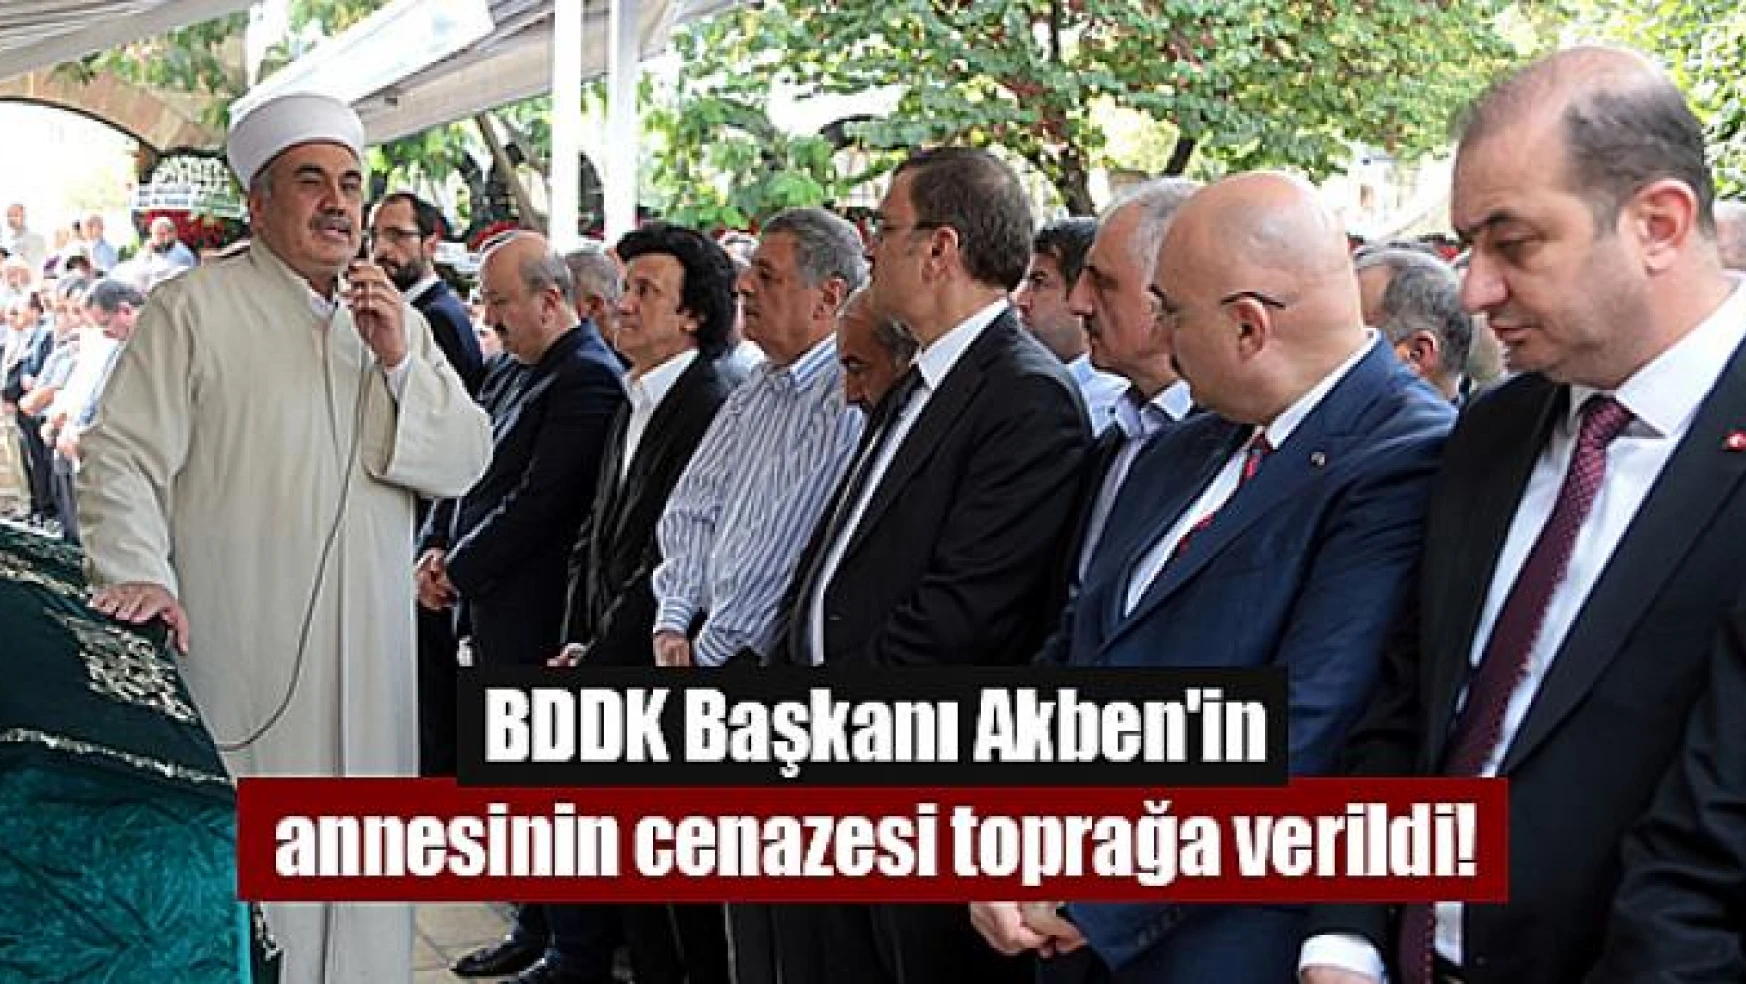 BDDK Başkanı Akben'in annesinin cenazesi toprağa verildi!